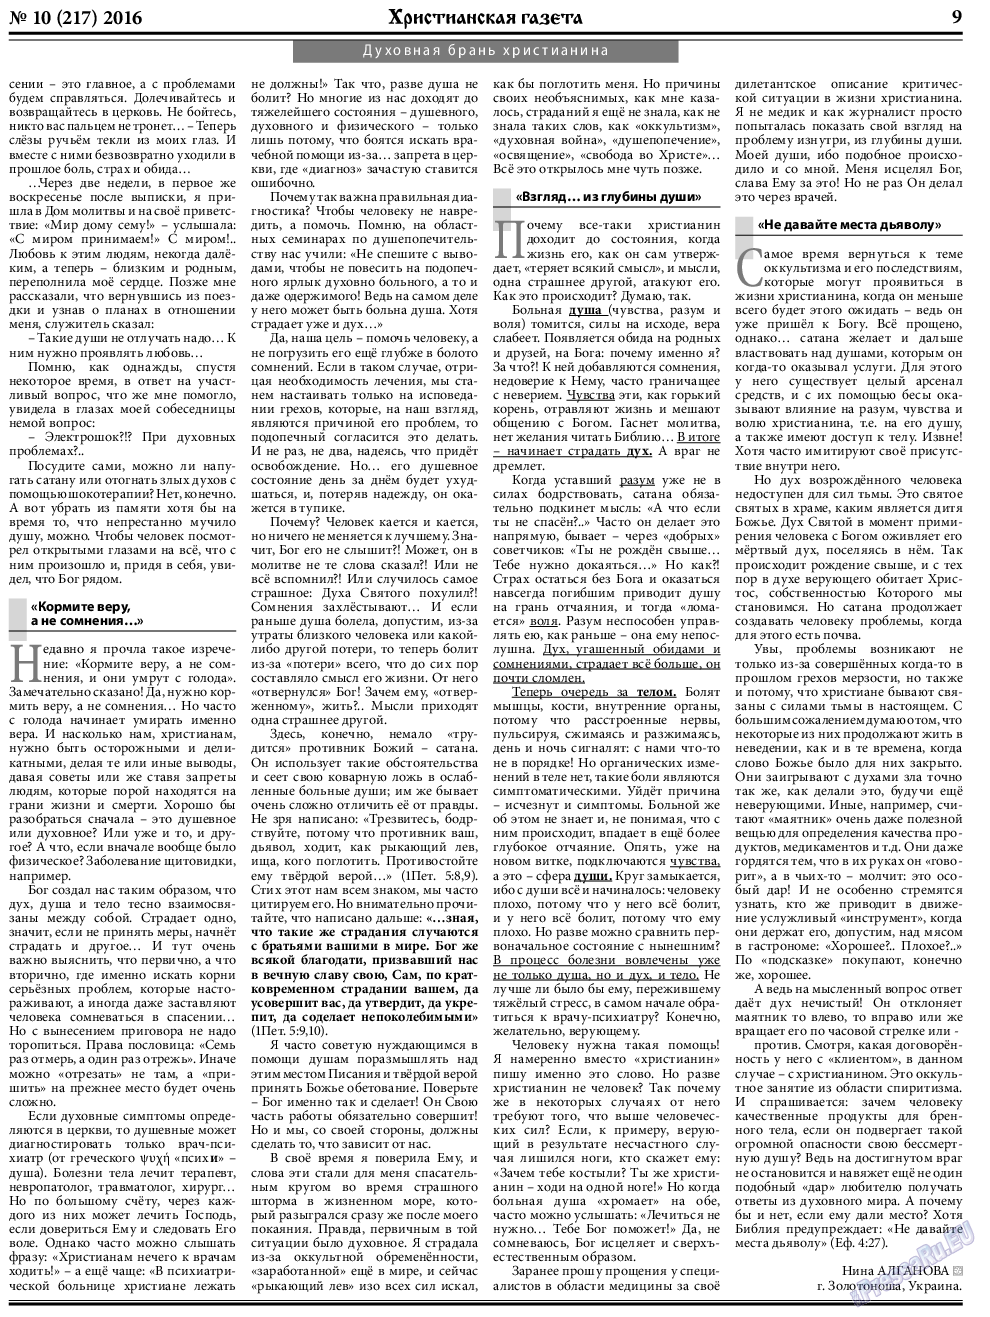 Христианская газета, газета. 2016 №10 стр.9